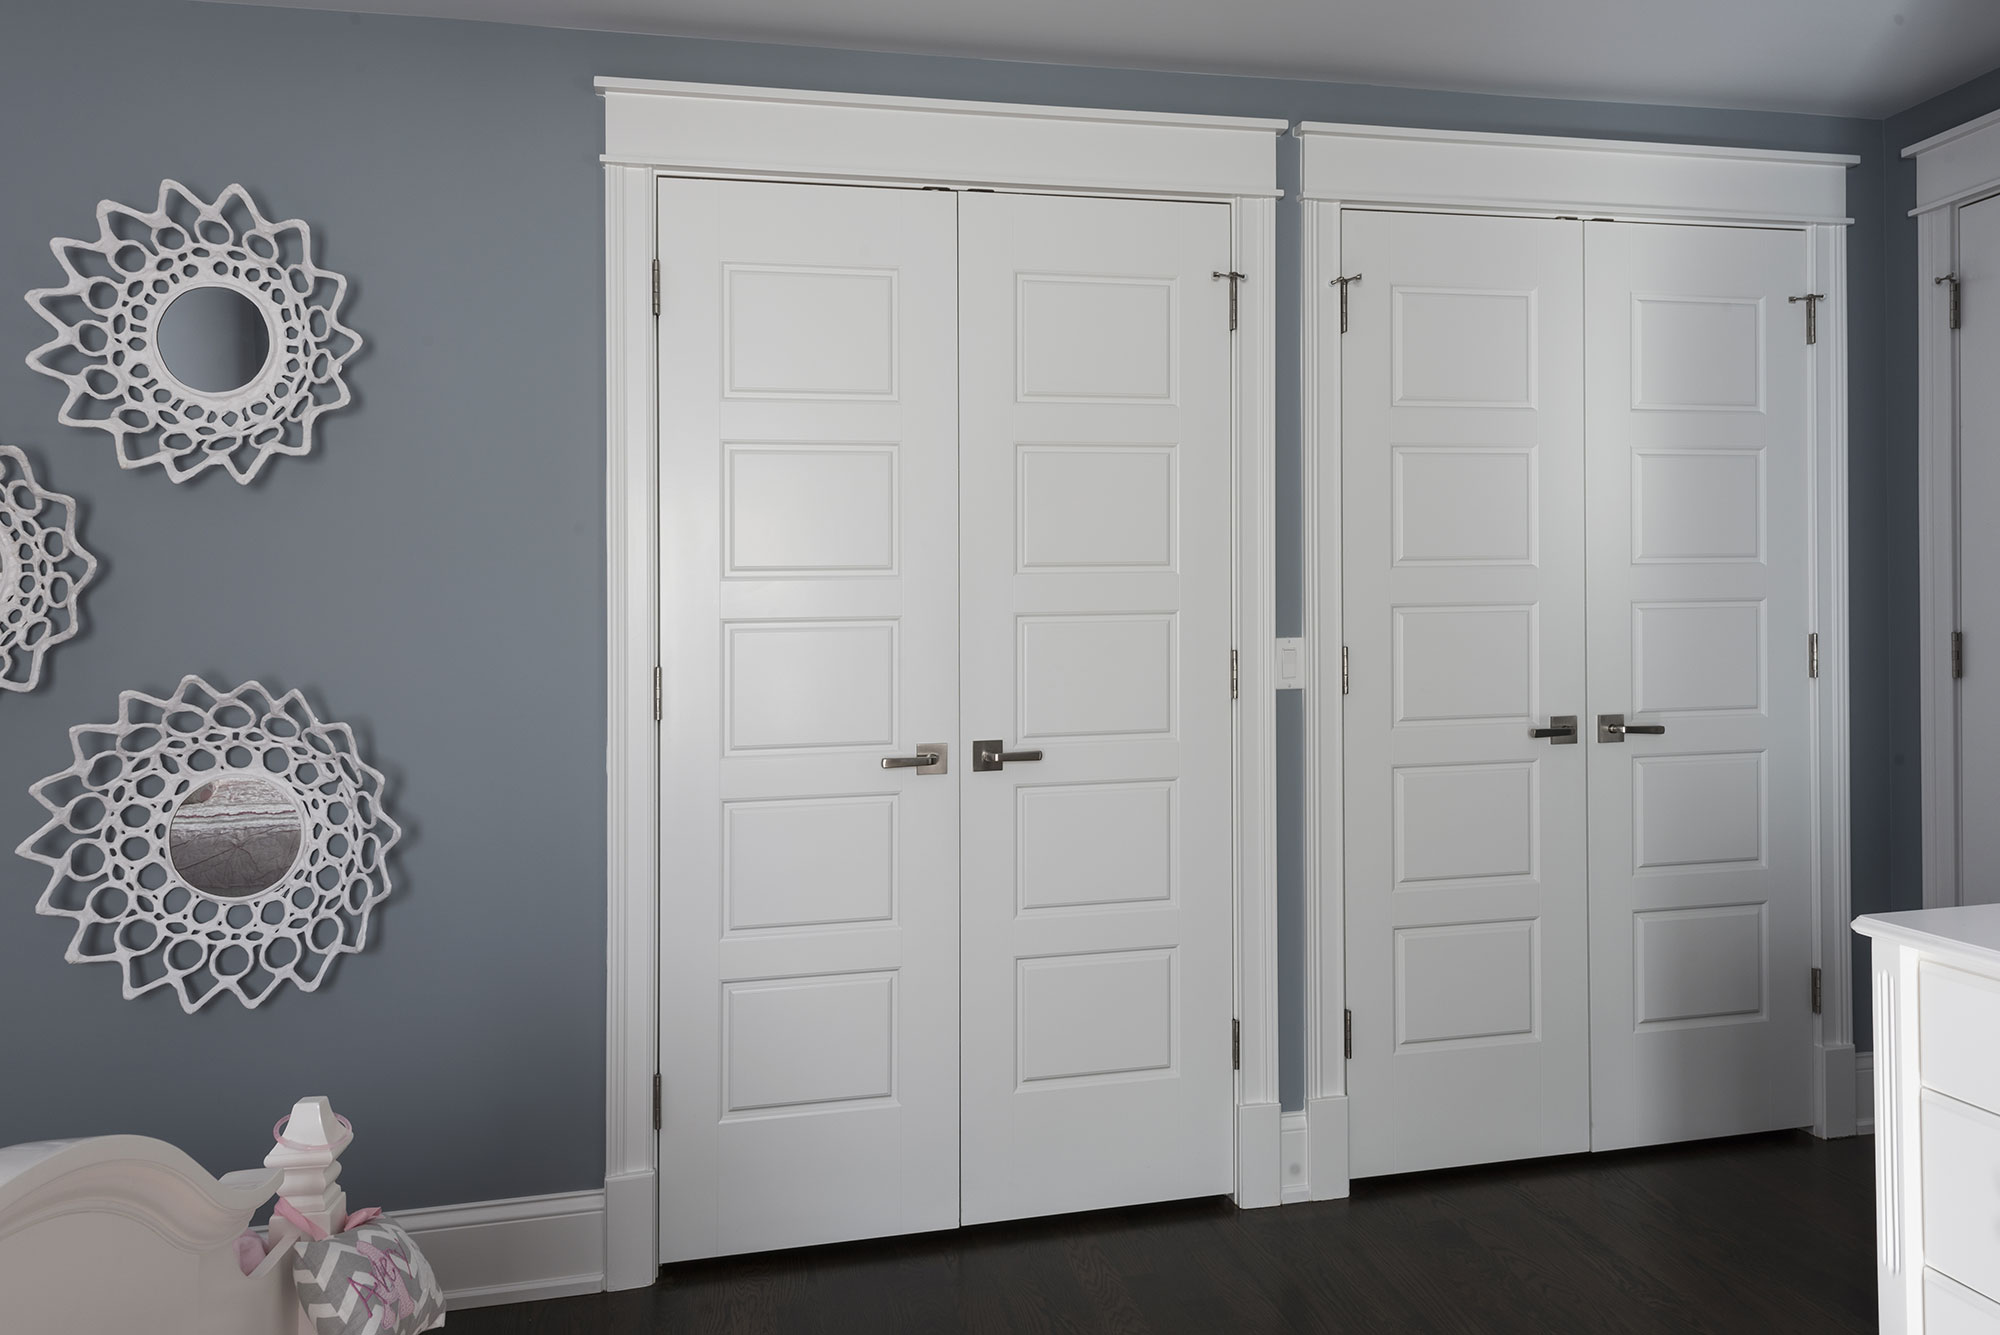 2430-Fir-St-Glenview - Coset-Doors,-Girl-Bedroom - Globex Developments Custom Homes